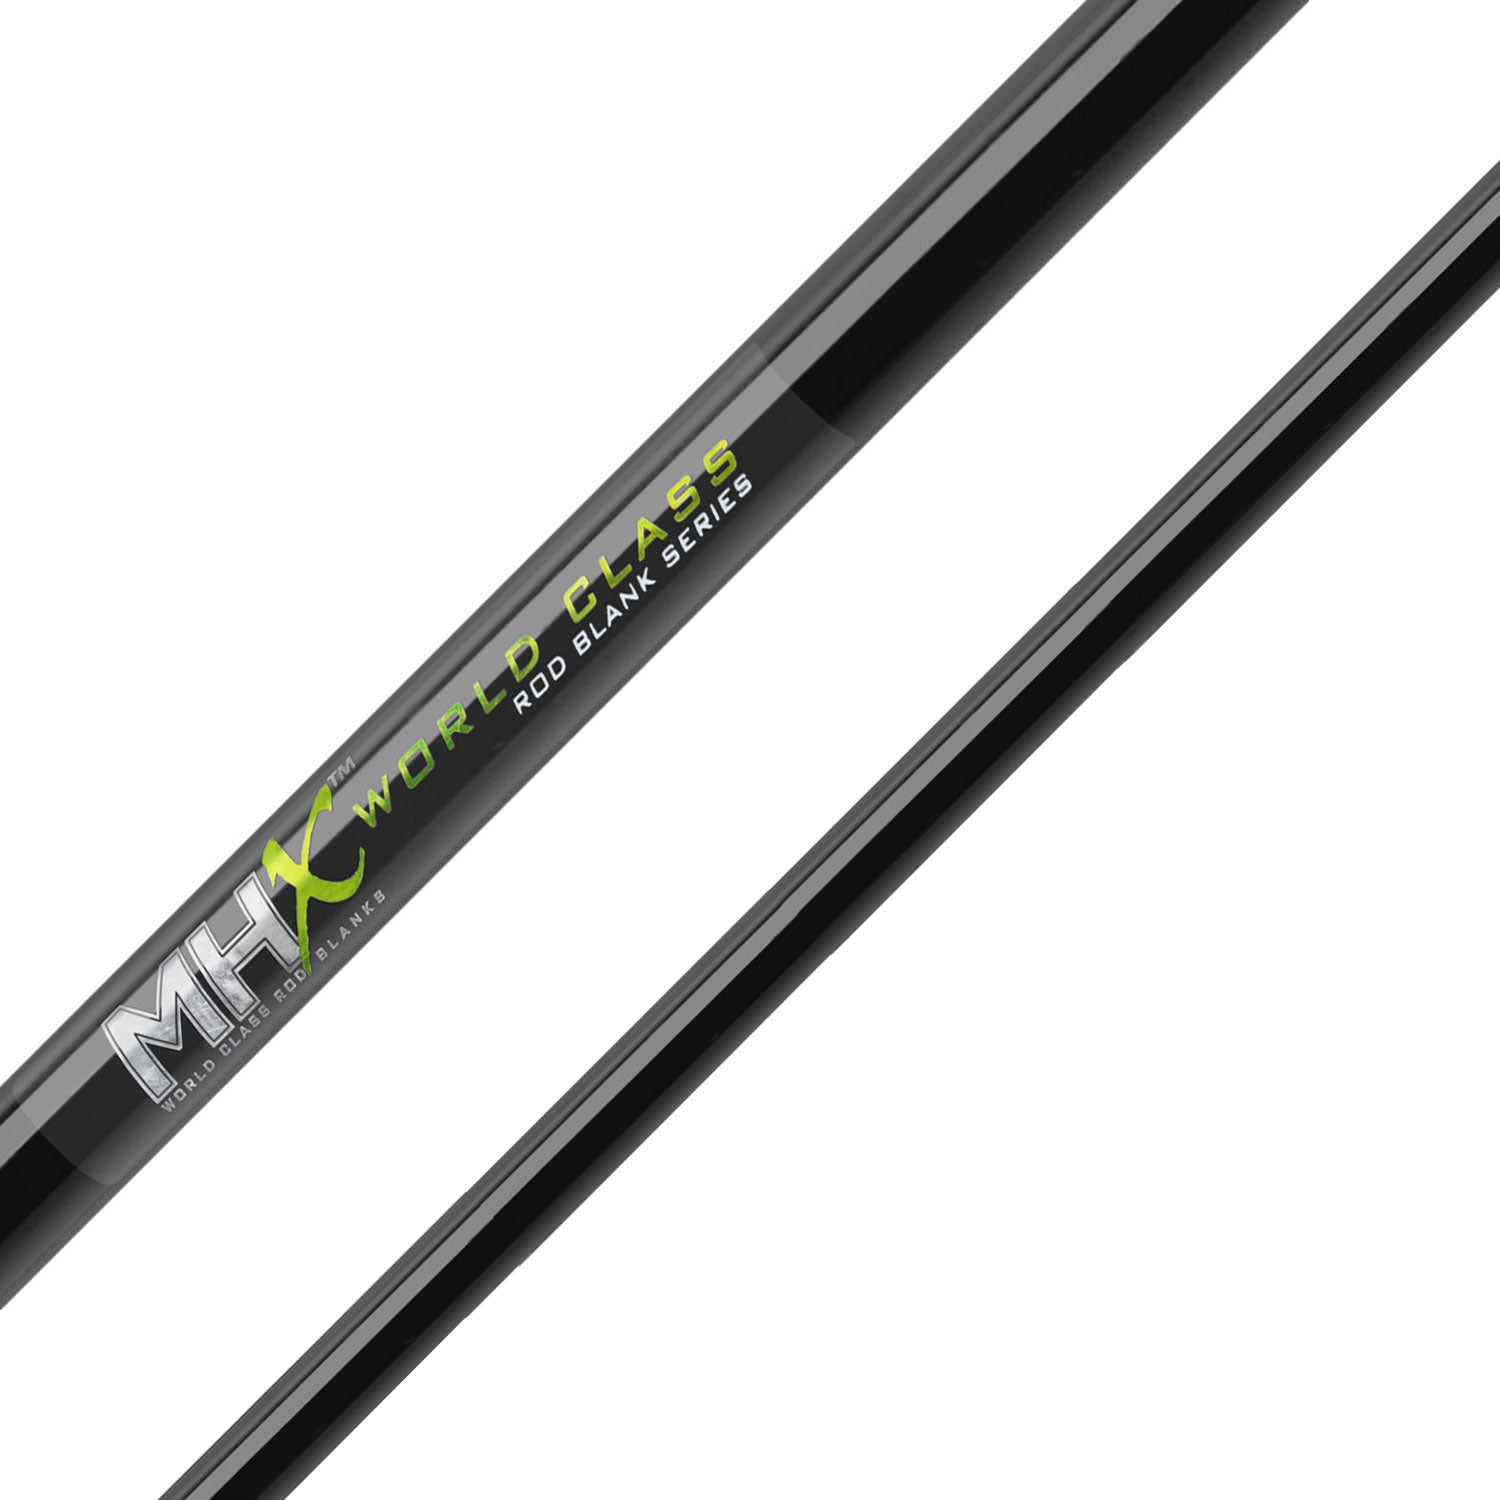 MHX 8'6" Med-Heavy X-Glass Downrigger Rod Blank - DR1024-MHX